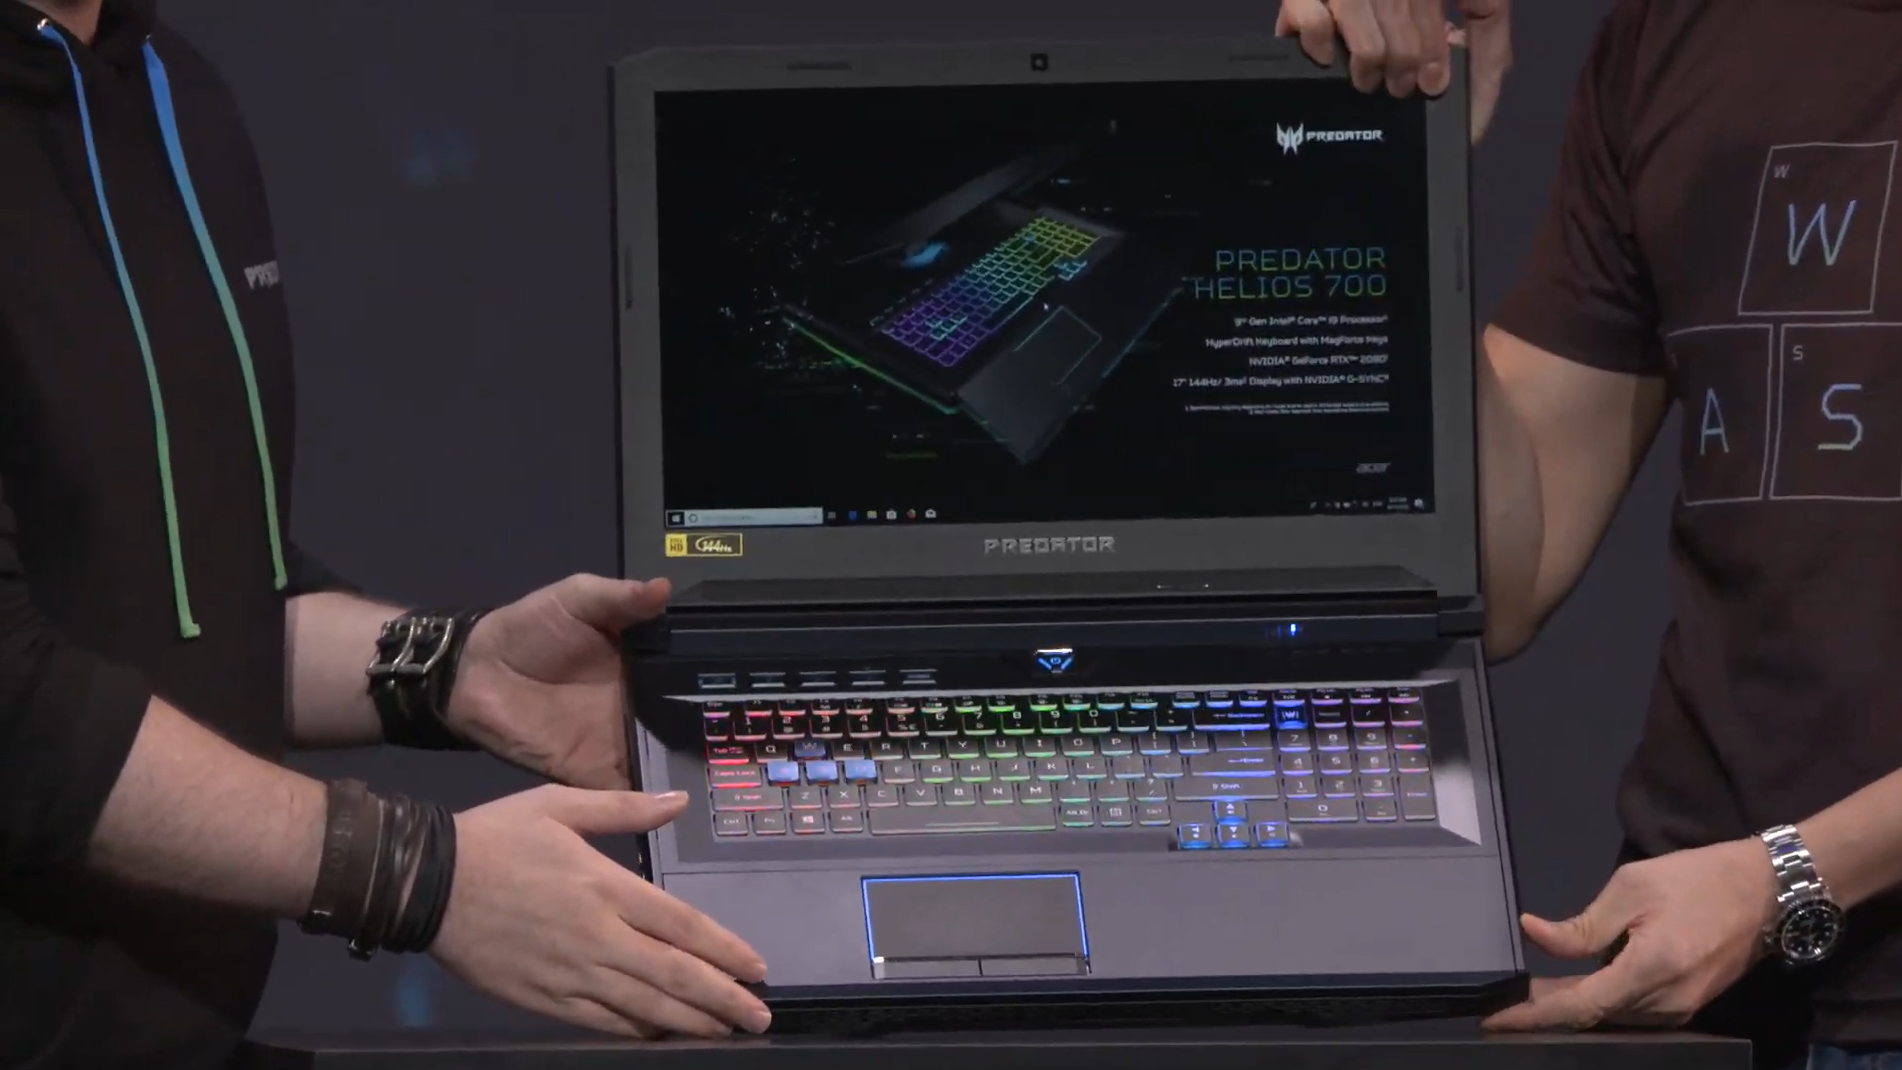 Kızaklı klavyeye sahip Acer Predator Helios 700 oyuncu dizüstü bilgisayarı duyuruldu